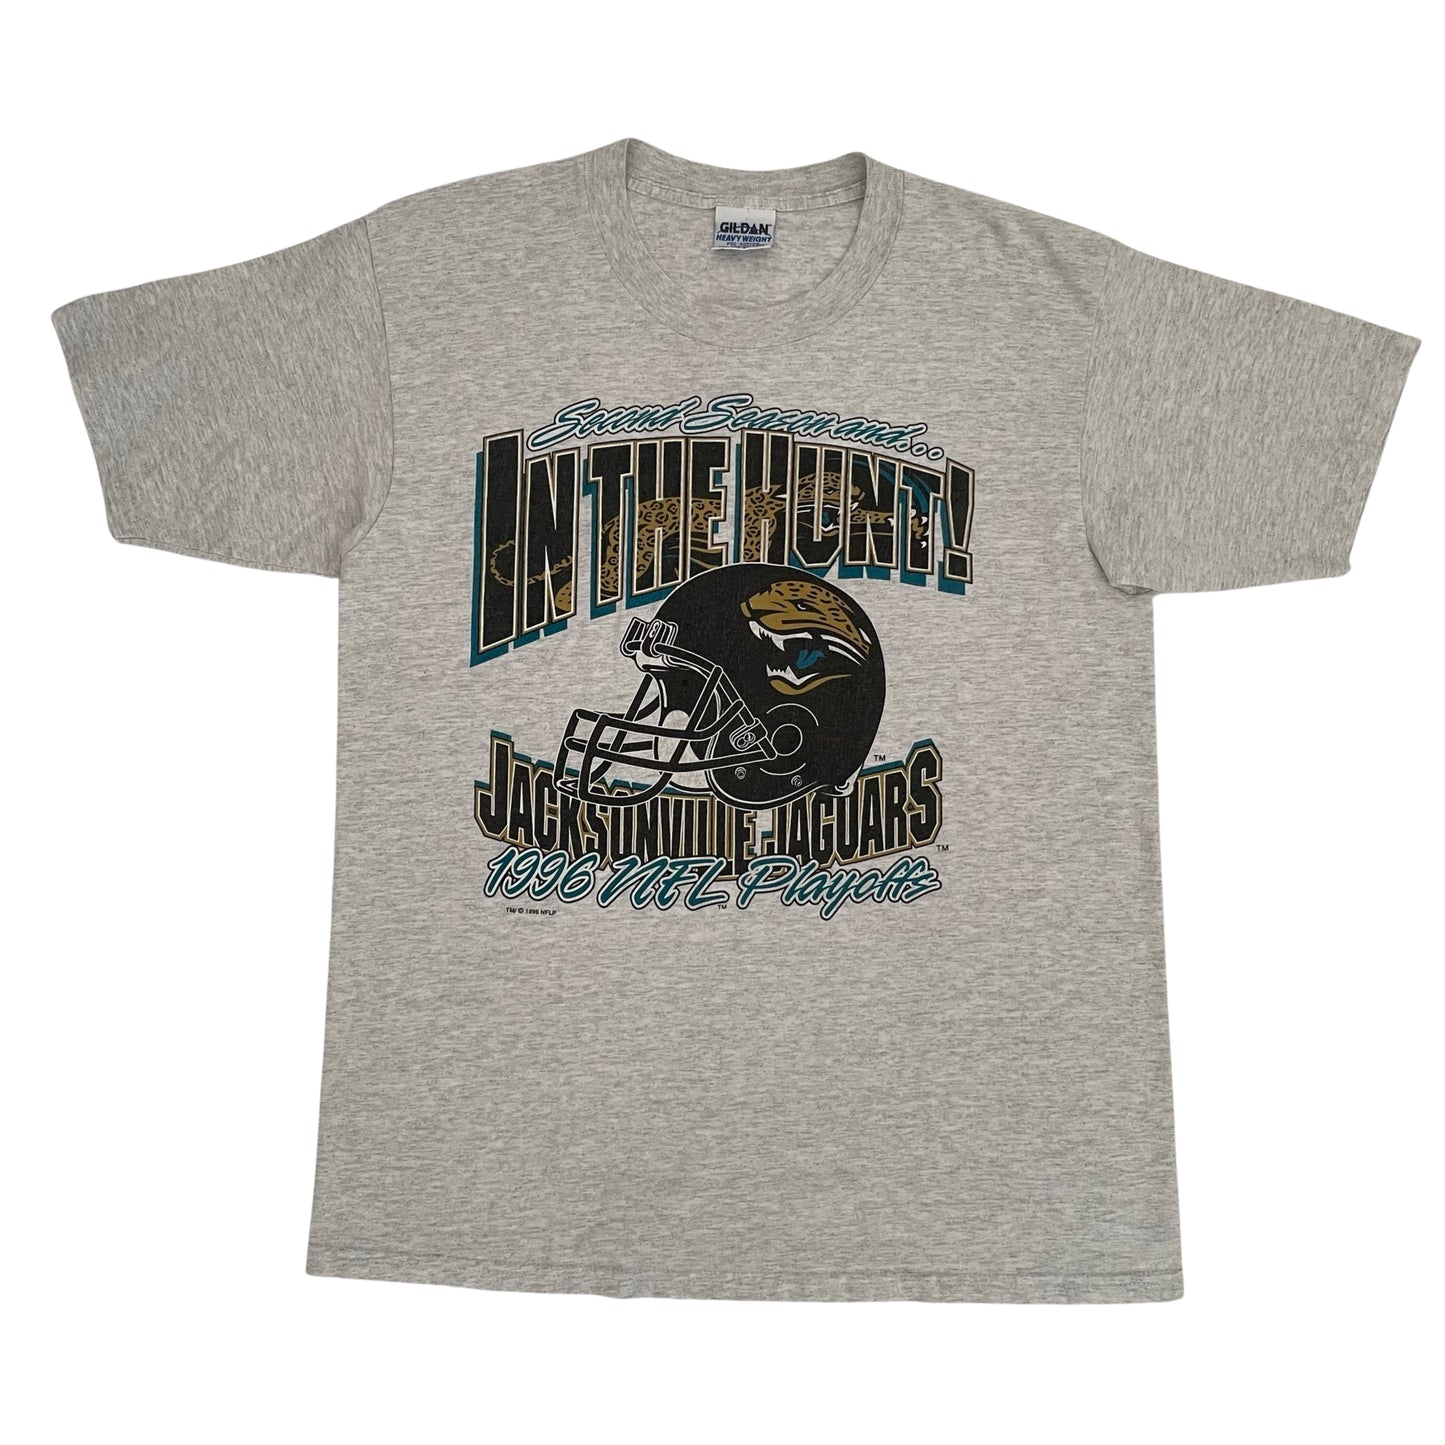 Vintage Jacksonville Jaguars 1996 NFL Playoffs shirt size MEDIUM